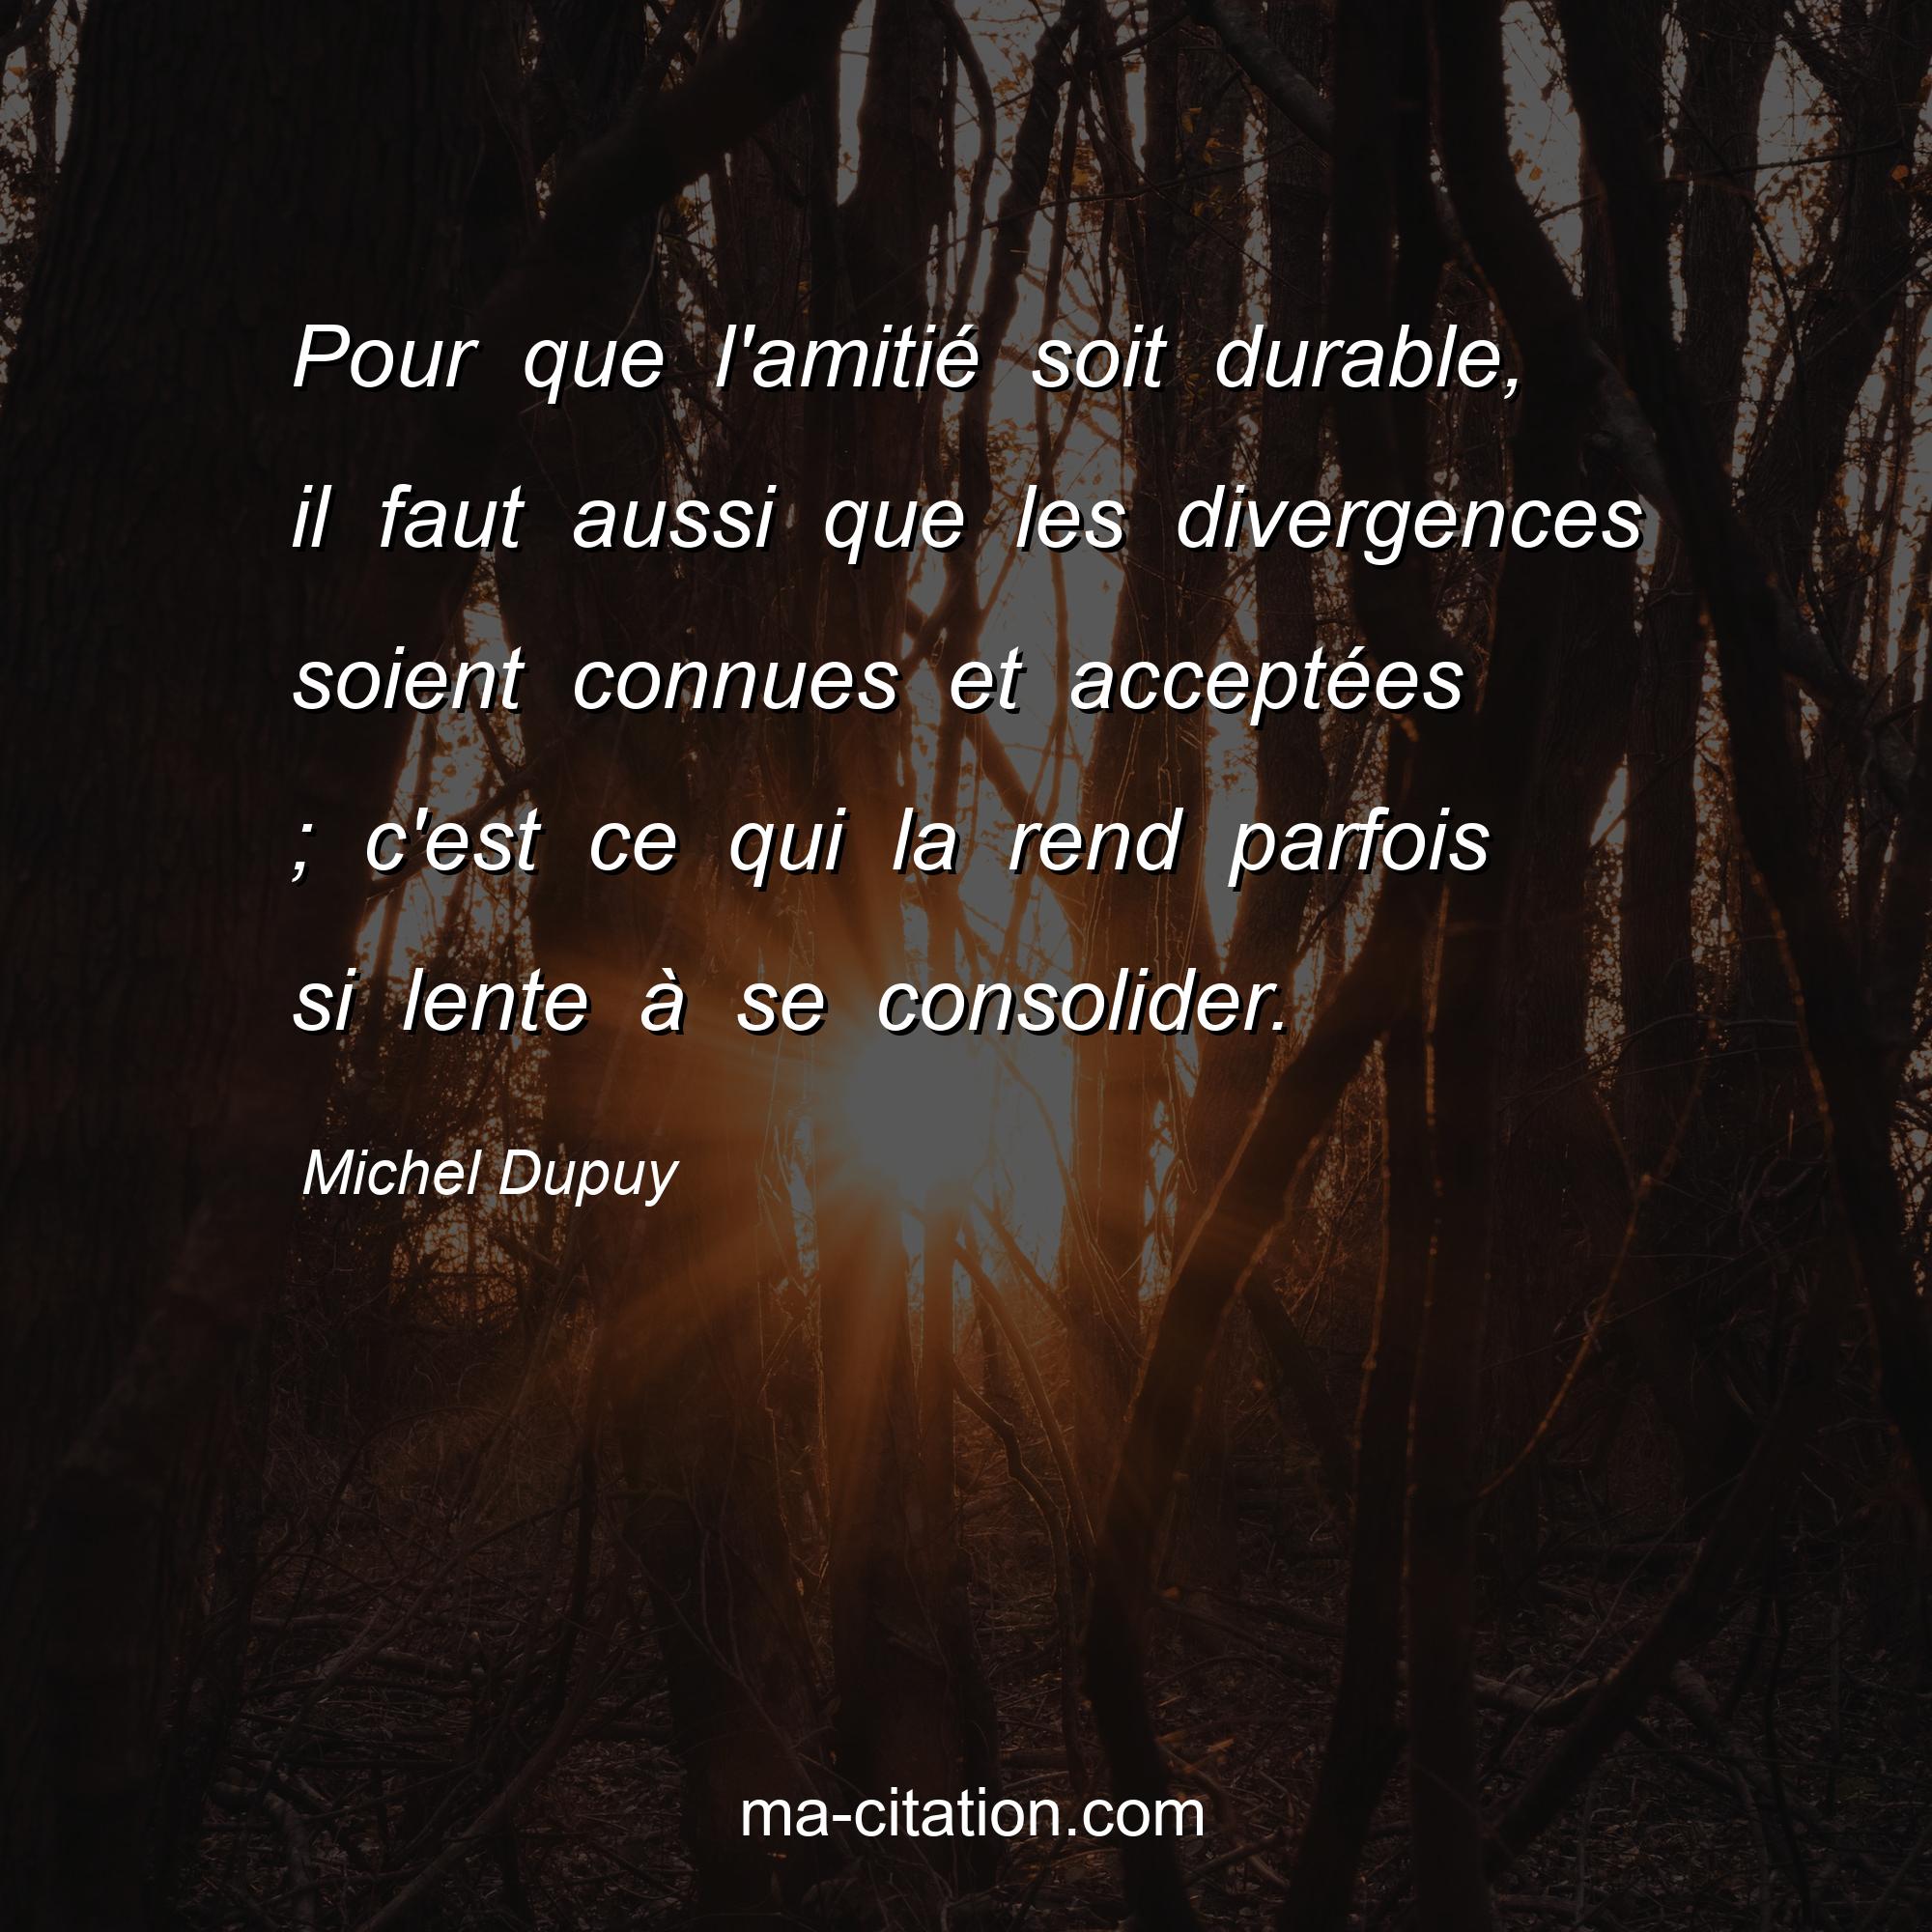 Michel Dupuy : Pour que l'amitié soit durable, il faut aussi que les divergences soient connues et acceptées ; c'est ce qui la rend parfois si lente à se consolider.